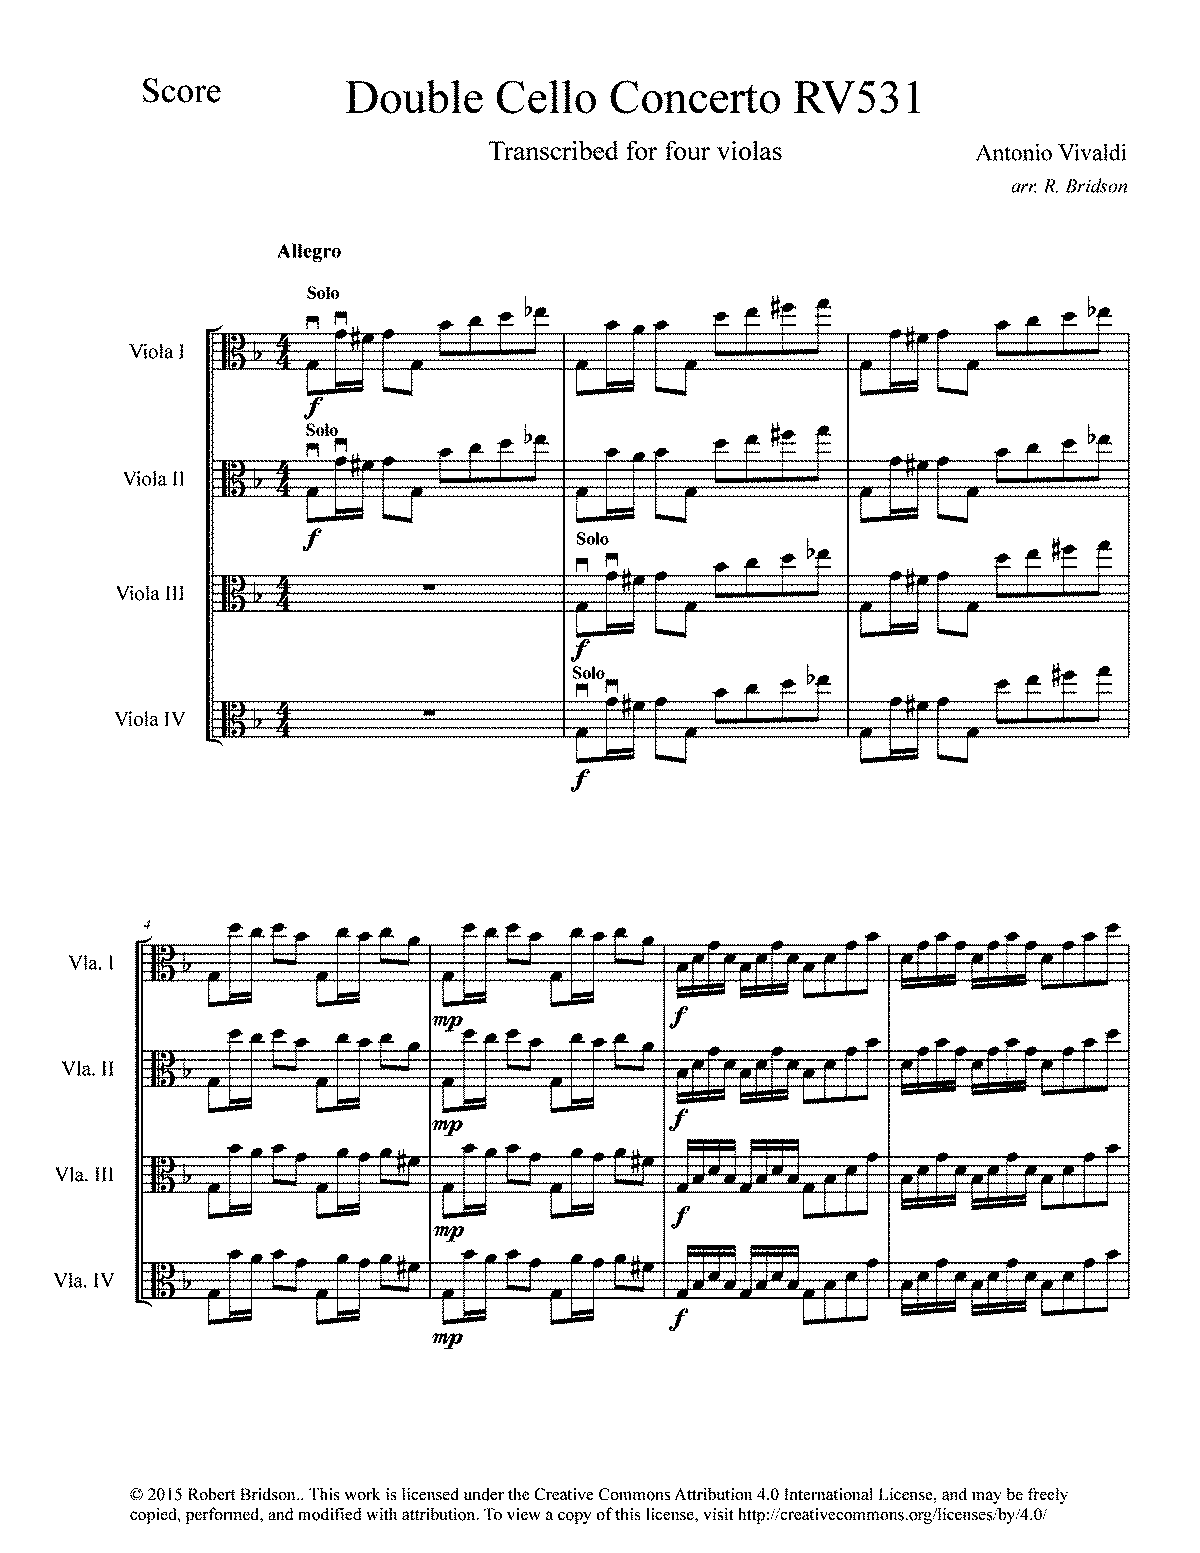 vivaldi concerto in g minor for two cellos